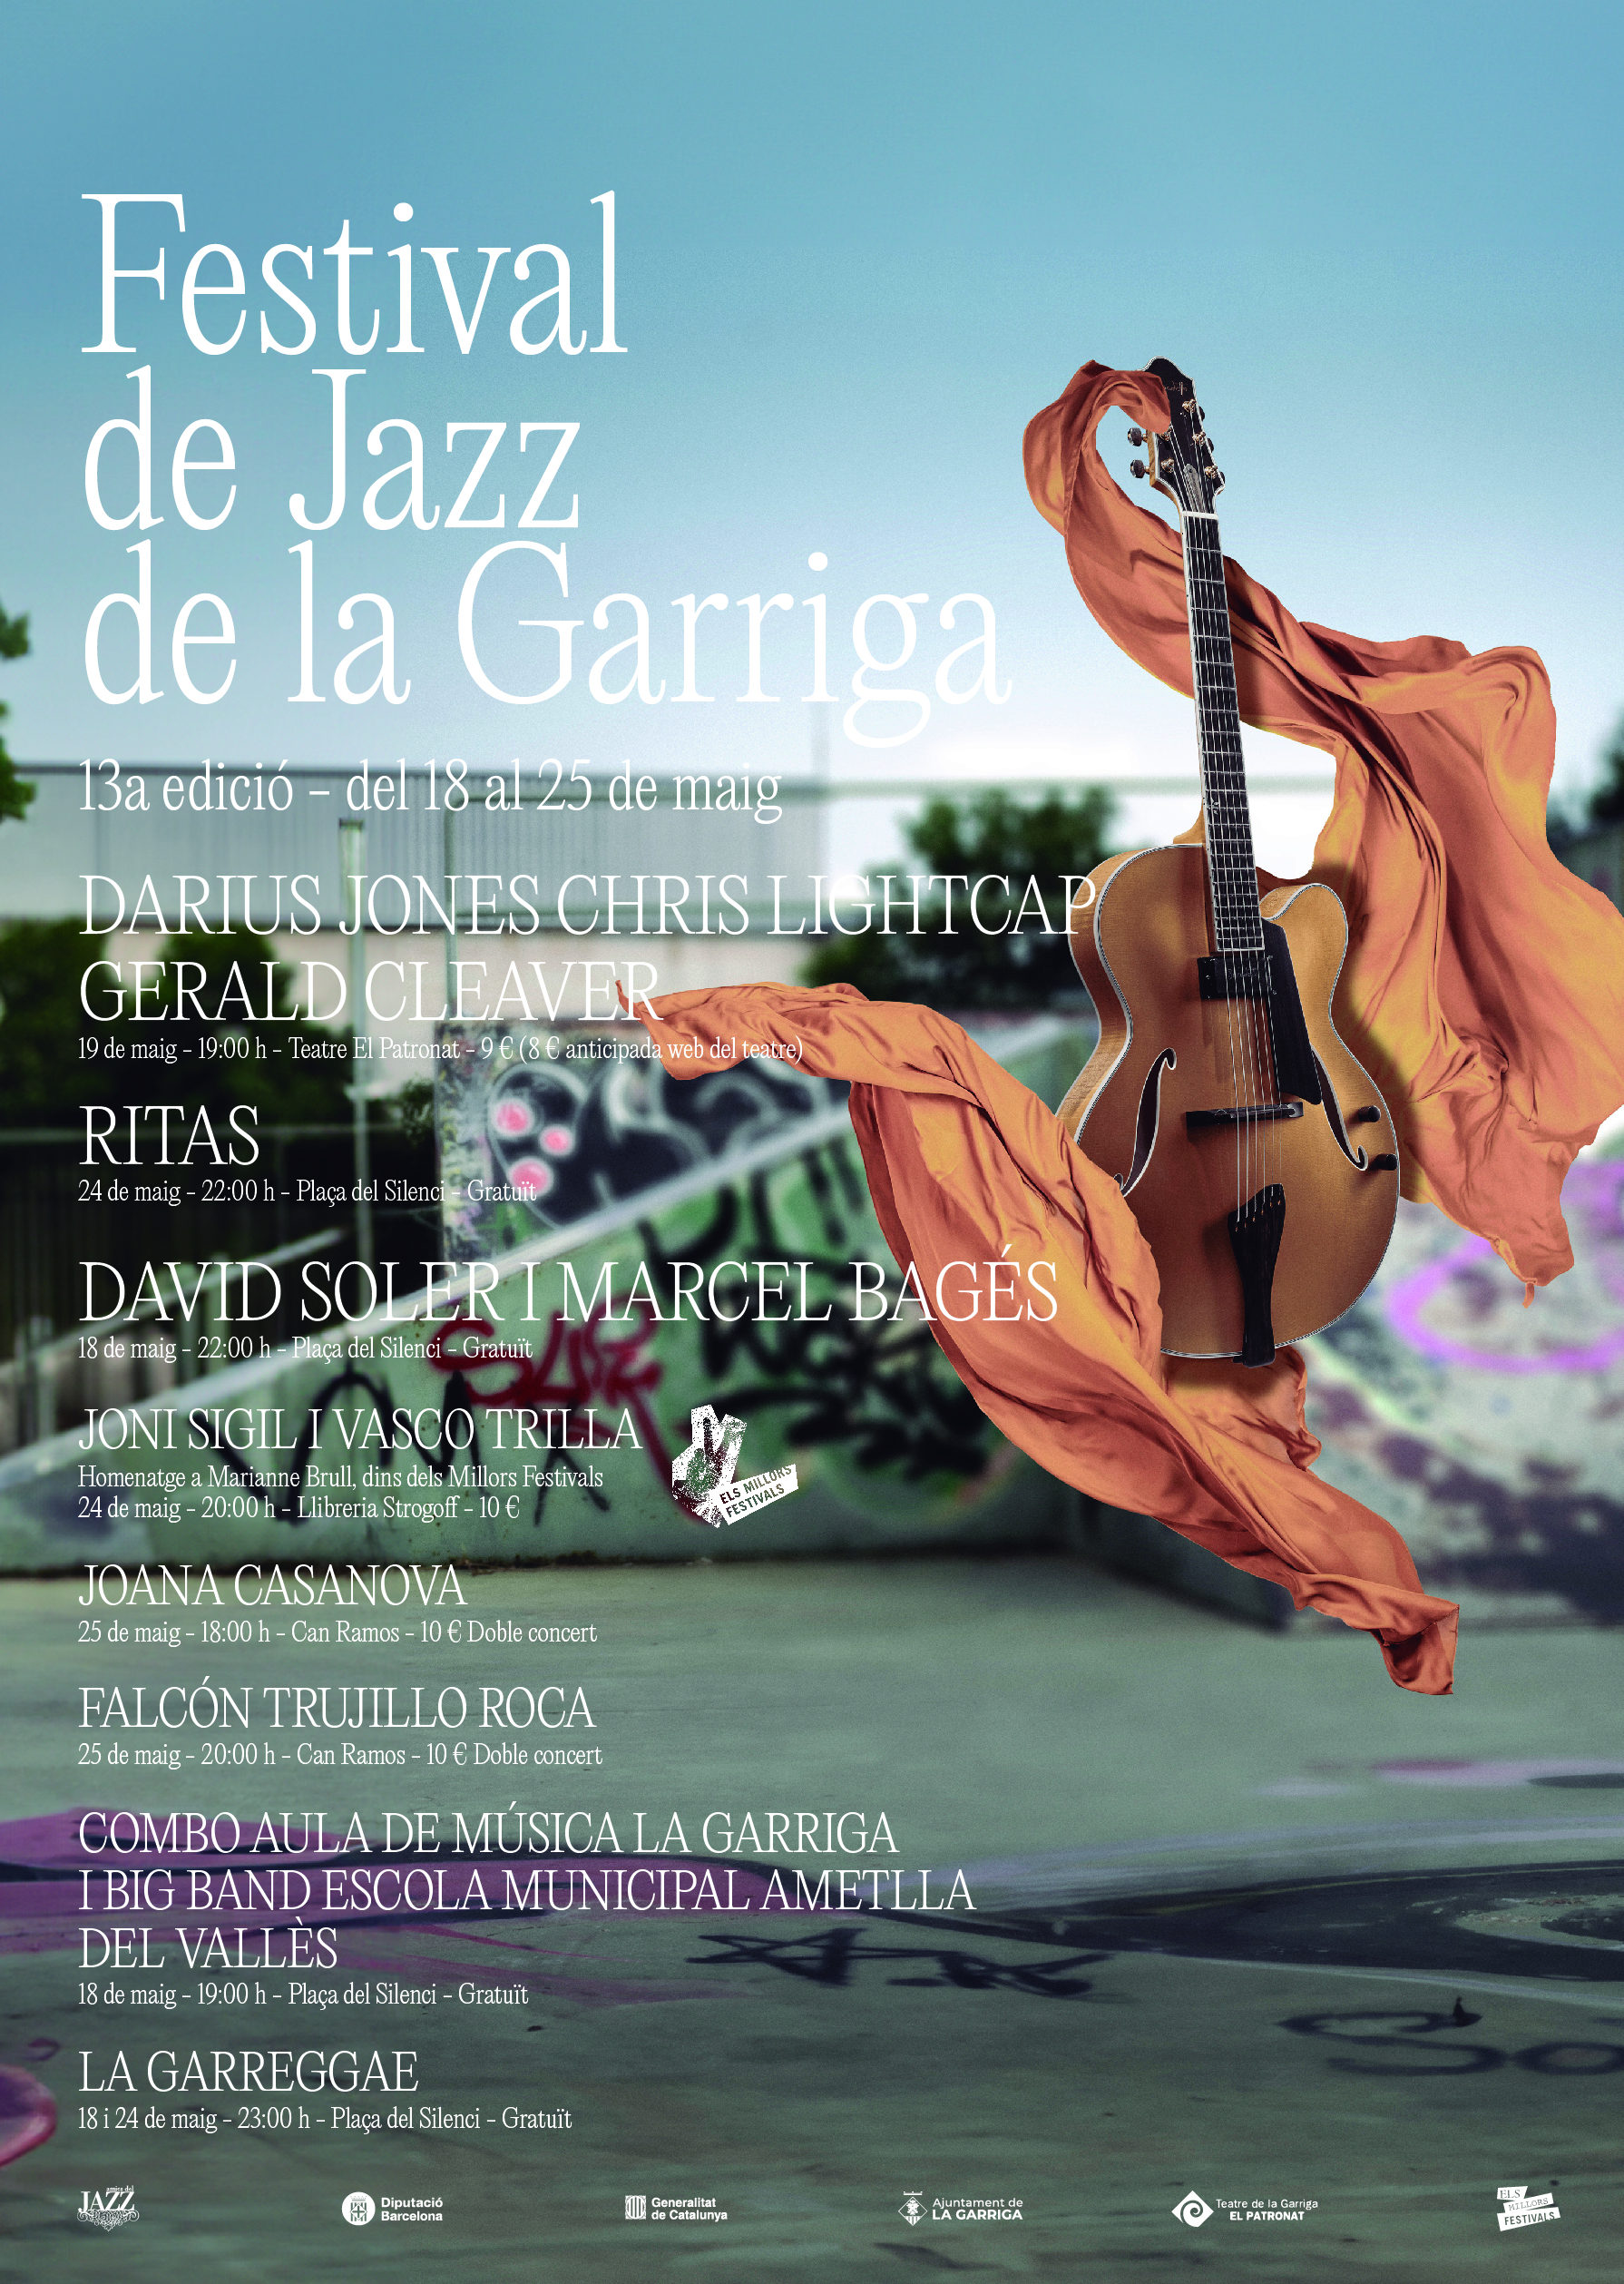 Torna el Festival de Jazz de la Garriga